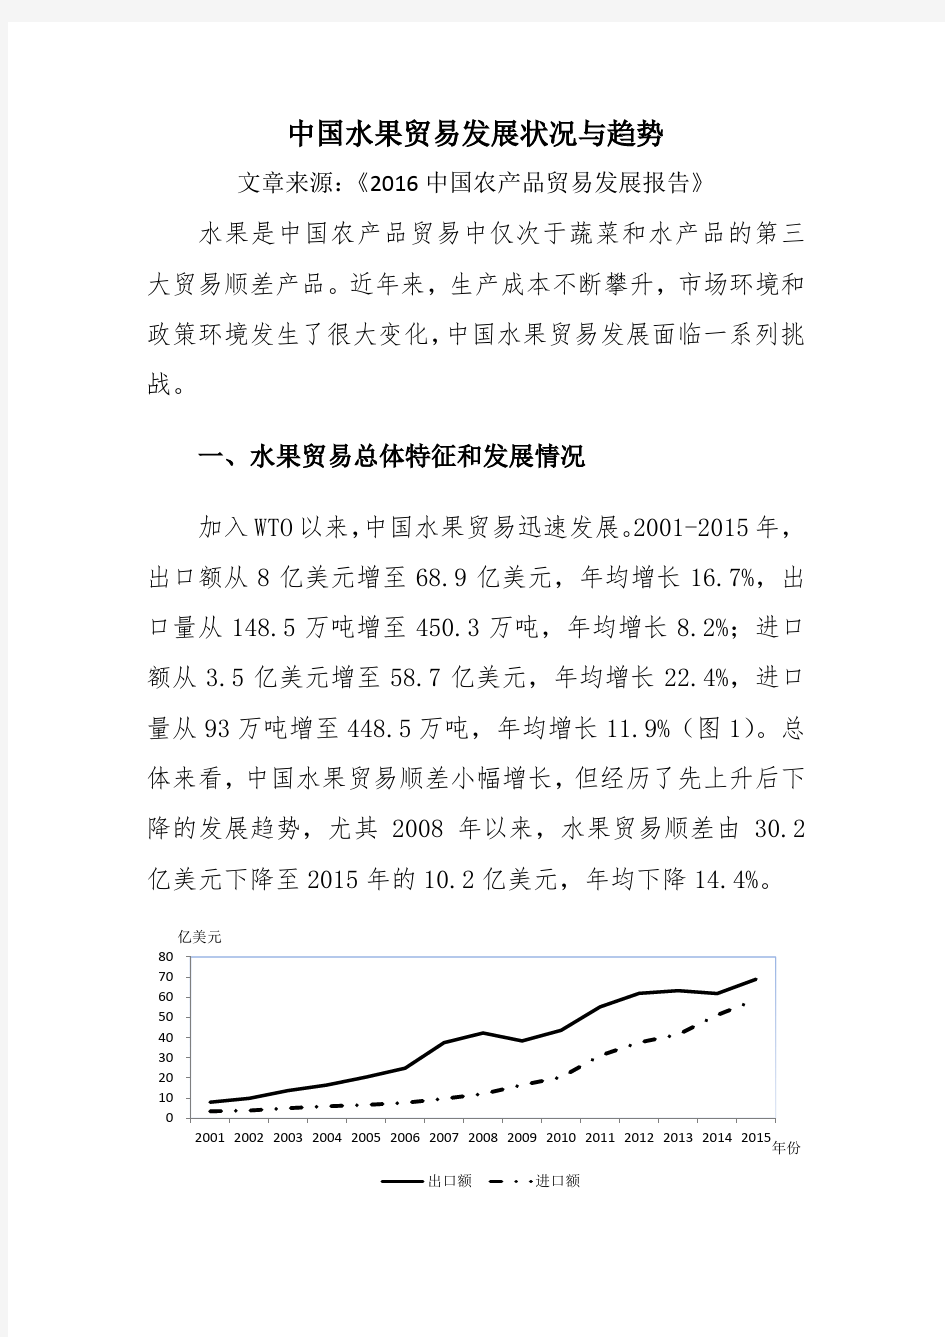 中国水果贸易发展状况与趋势